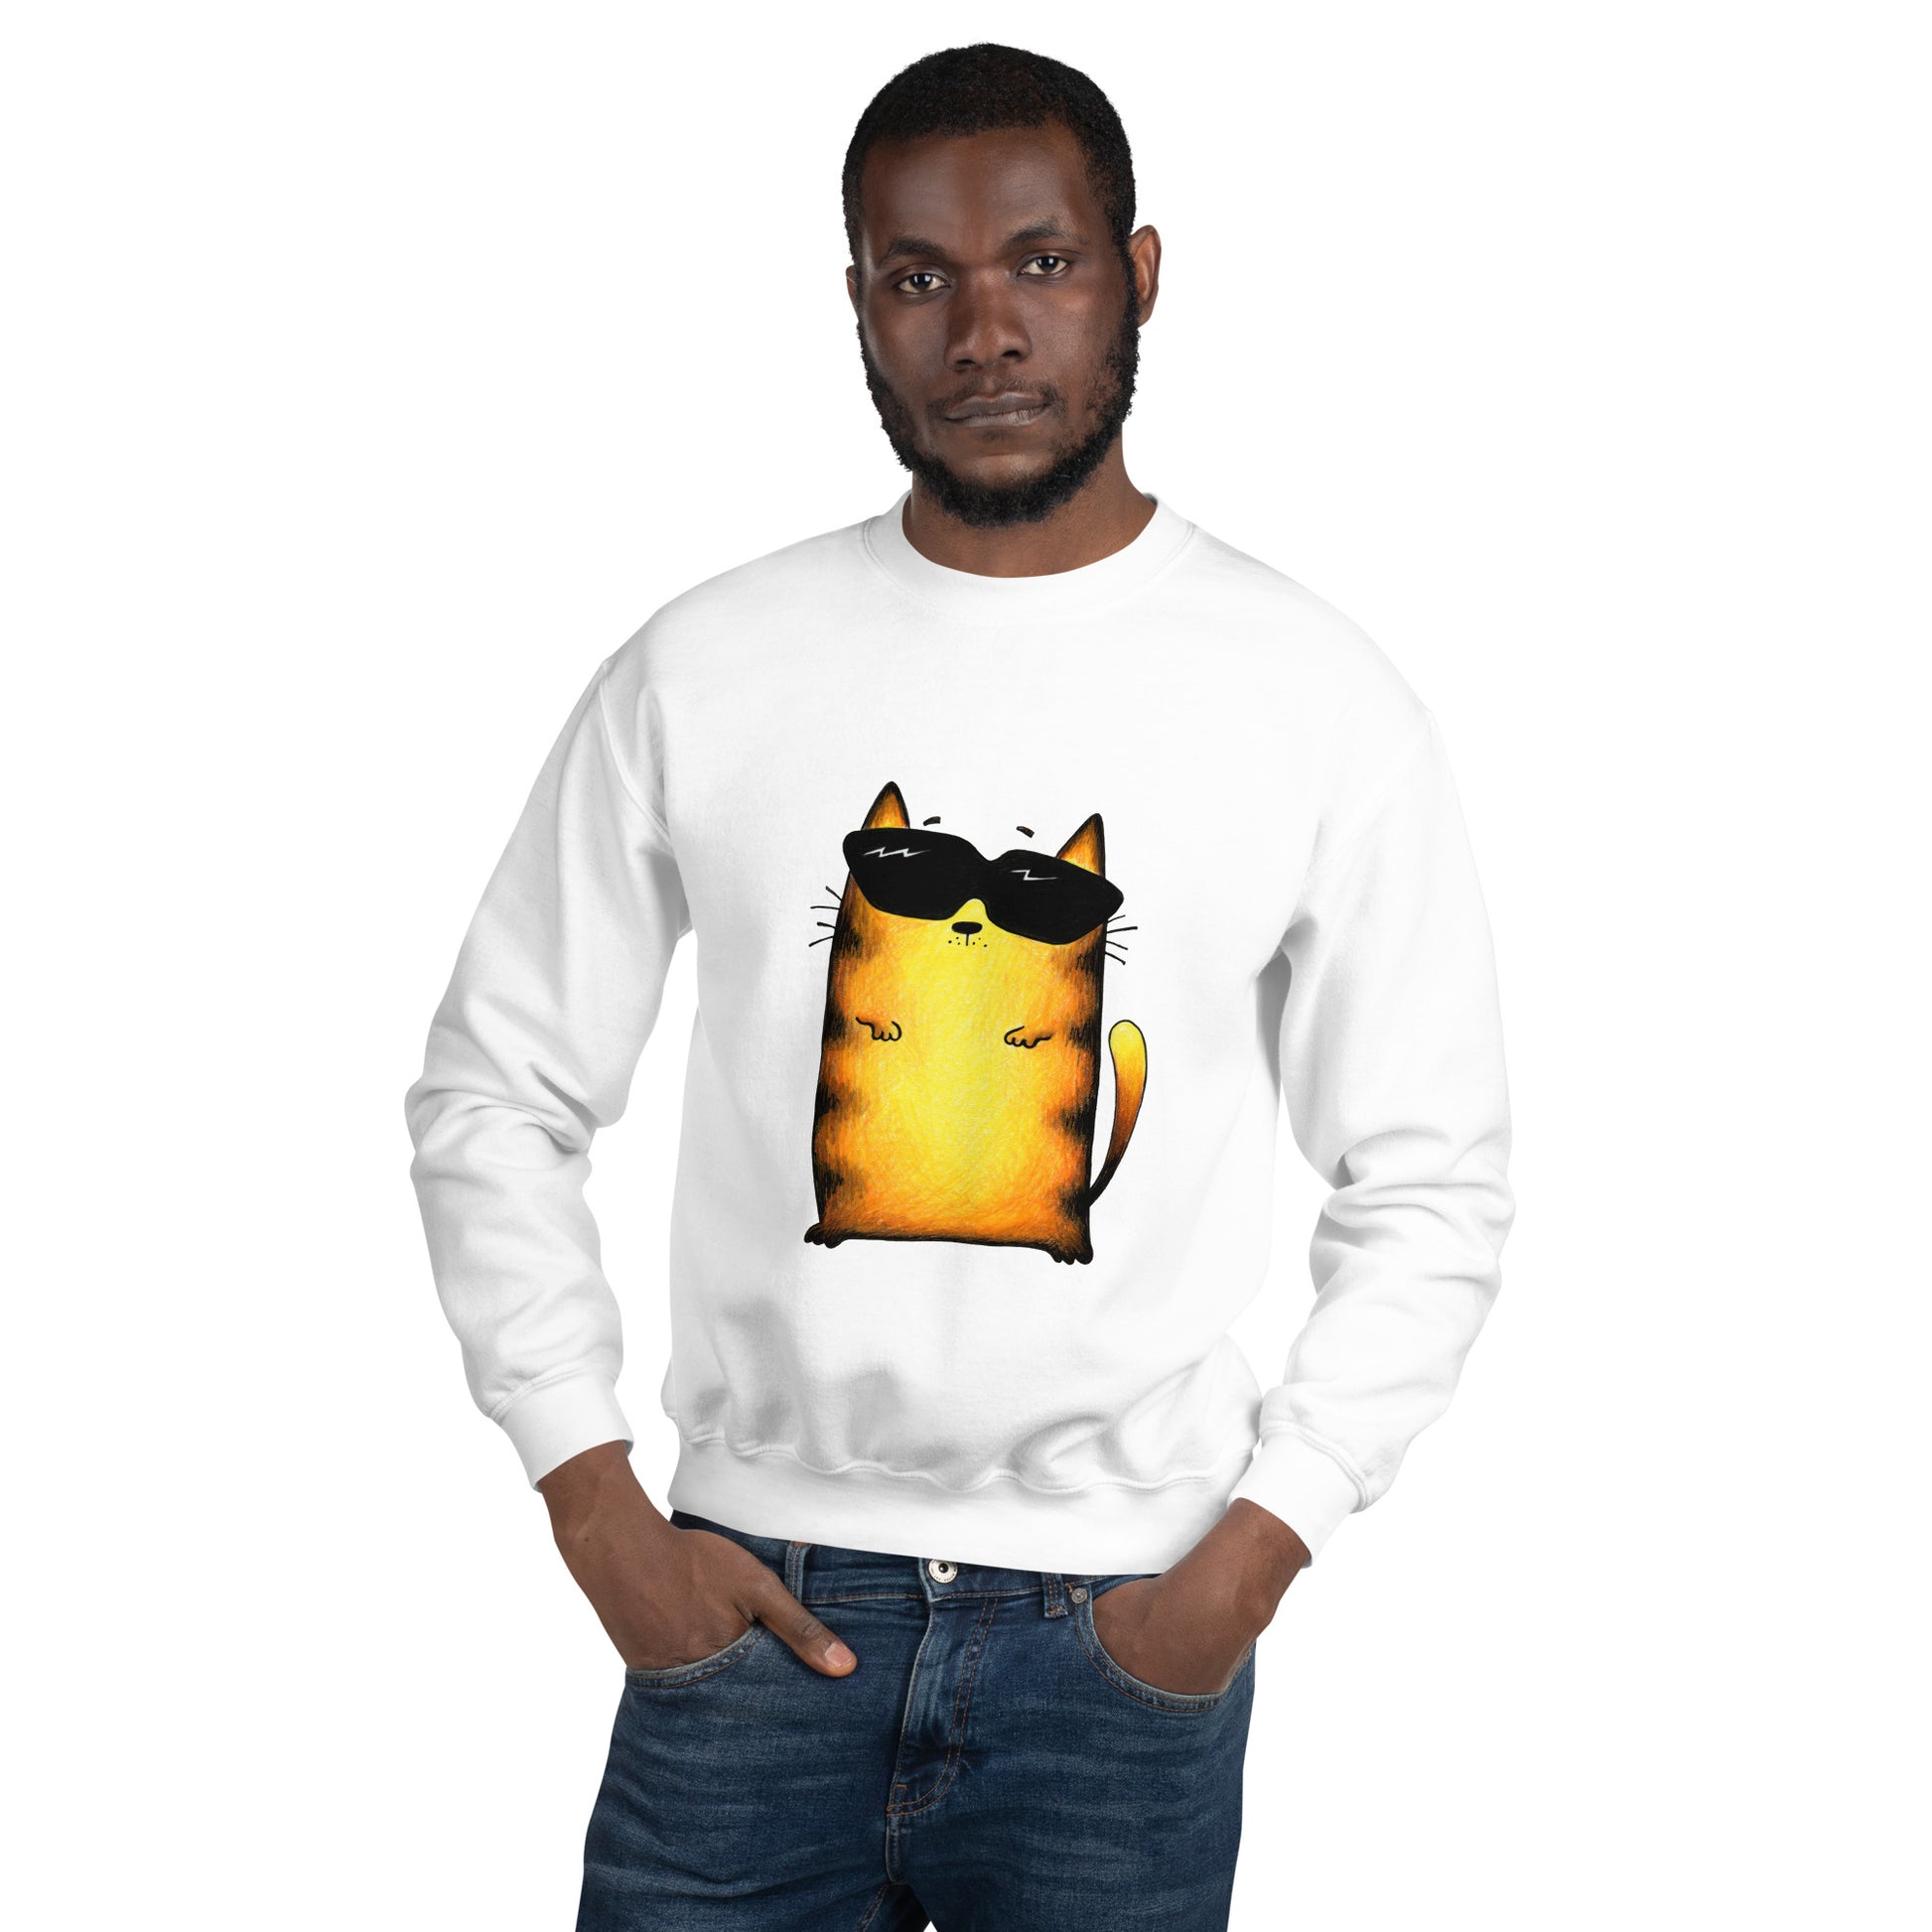 Men's white sweatshirt with yellow cat